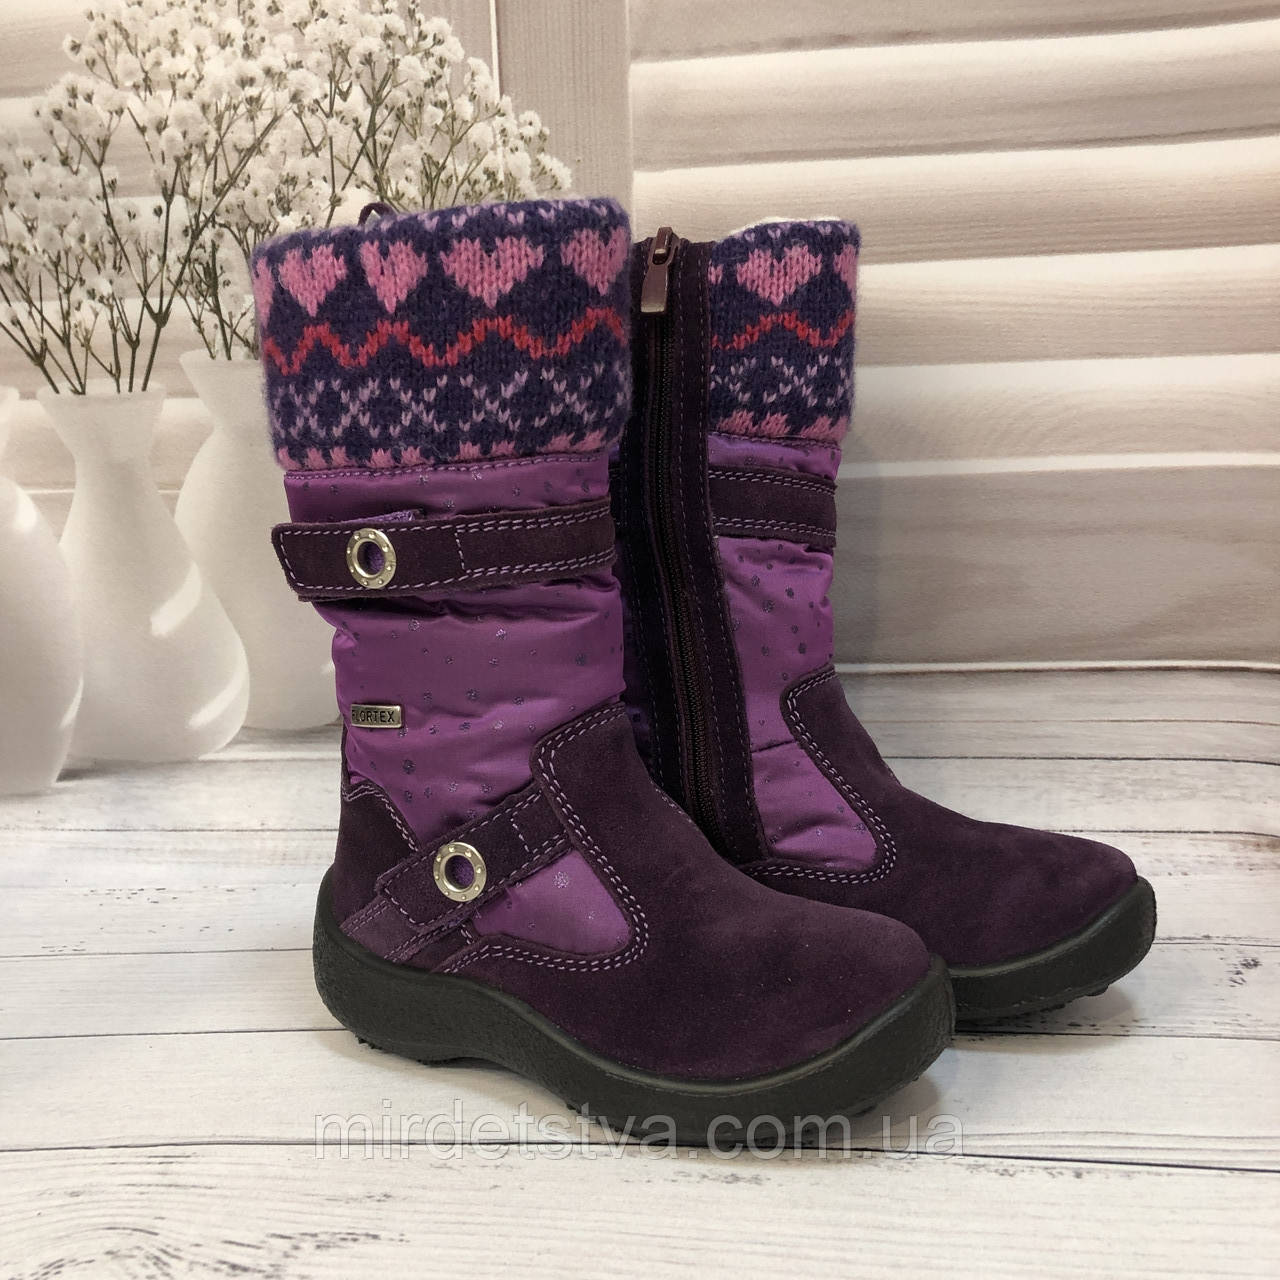 Дитячі зимові чоботи на мембрані для дівчинки Floare фіолетові